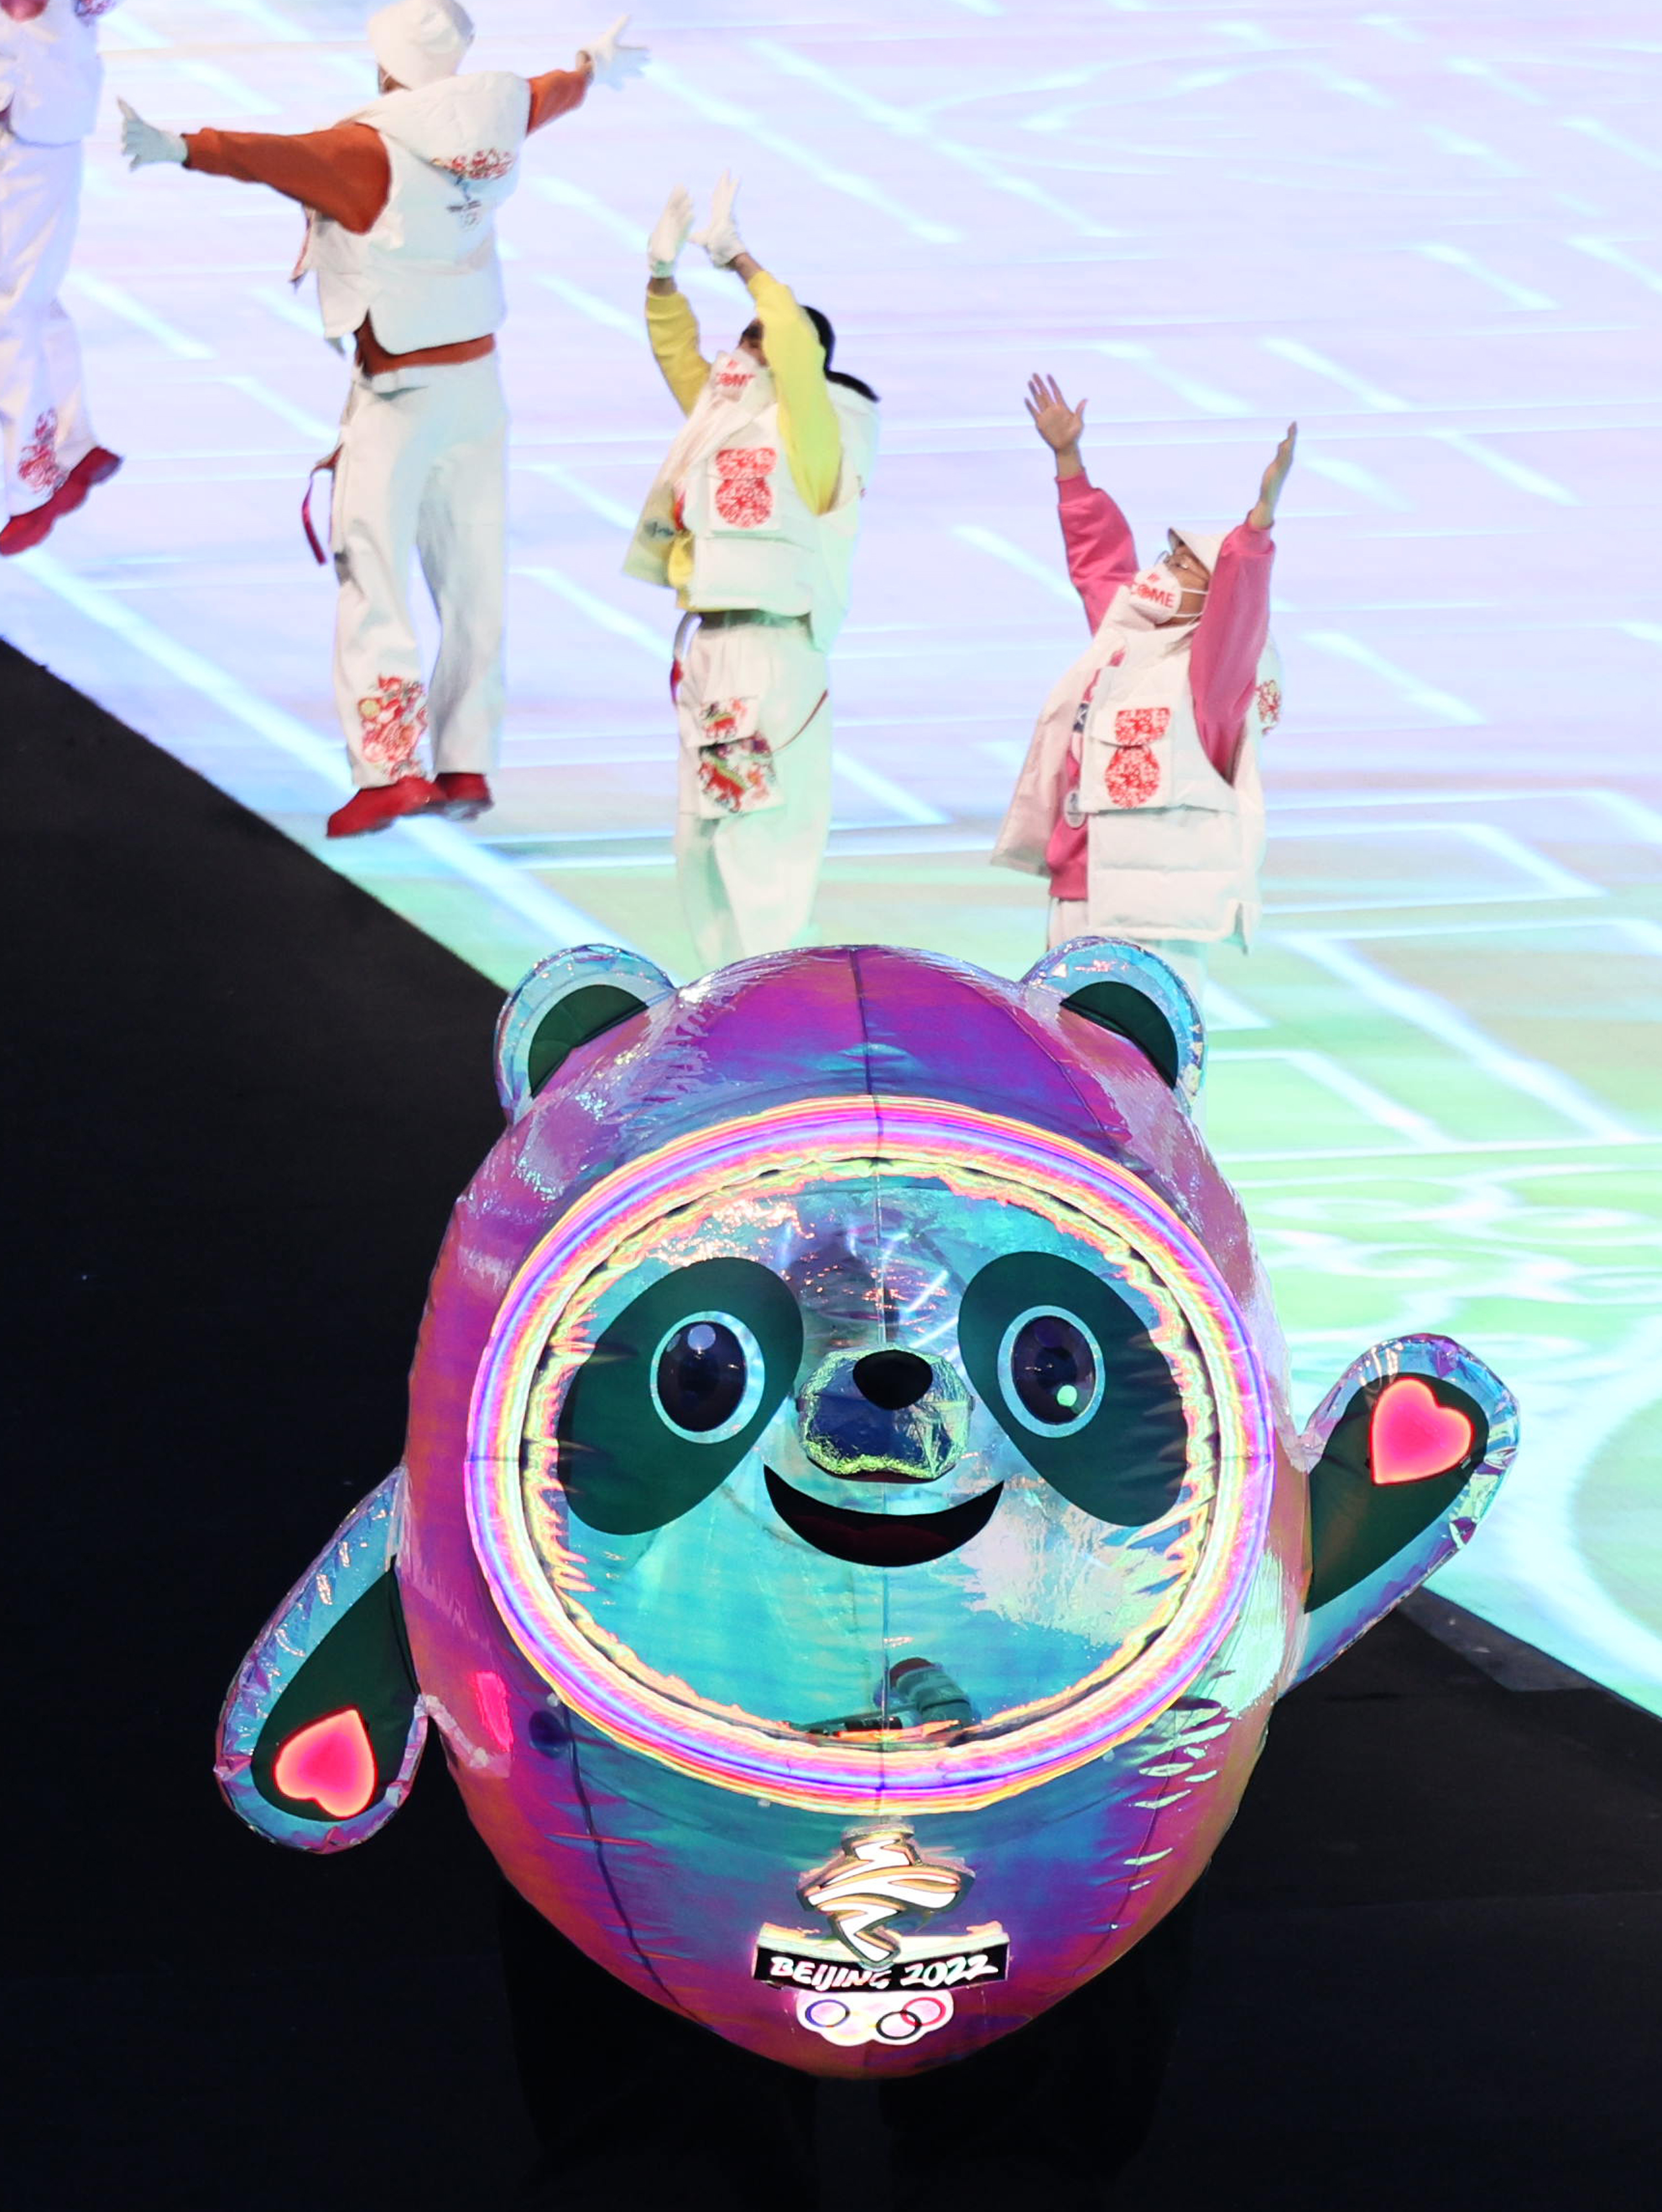 北京冬季五輪のパンダのマスコット ビンドゥンドゥンにハマる人続出 ぬいぐるみ欲しい 可愛い 1 2ページ イザ